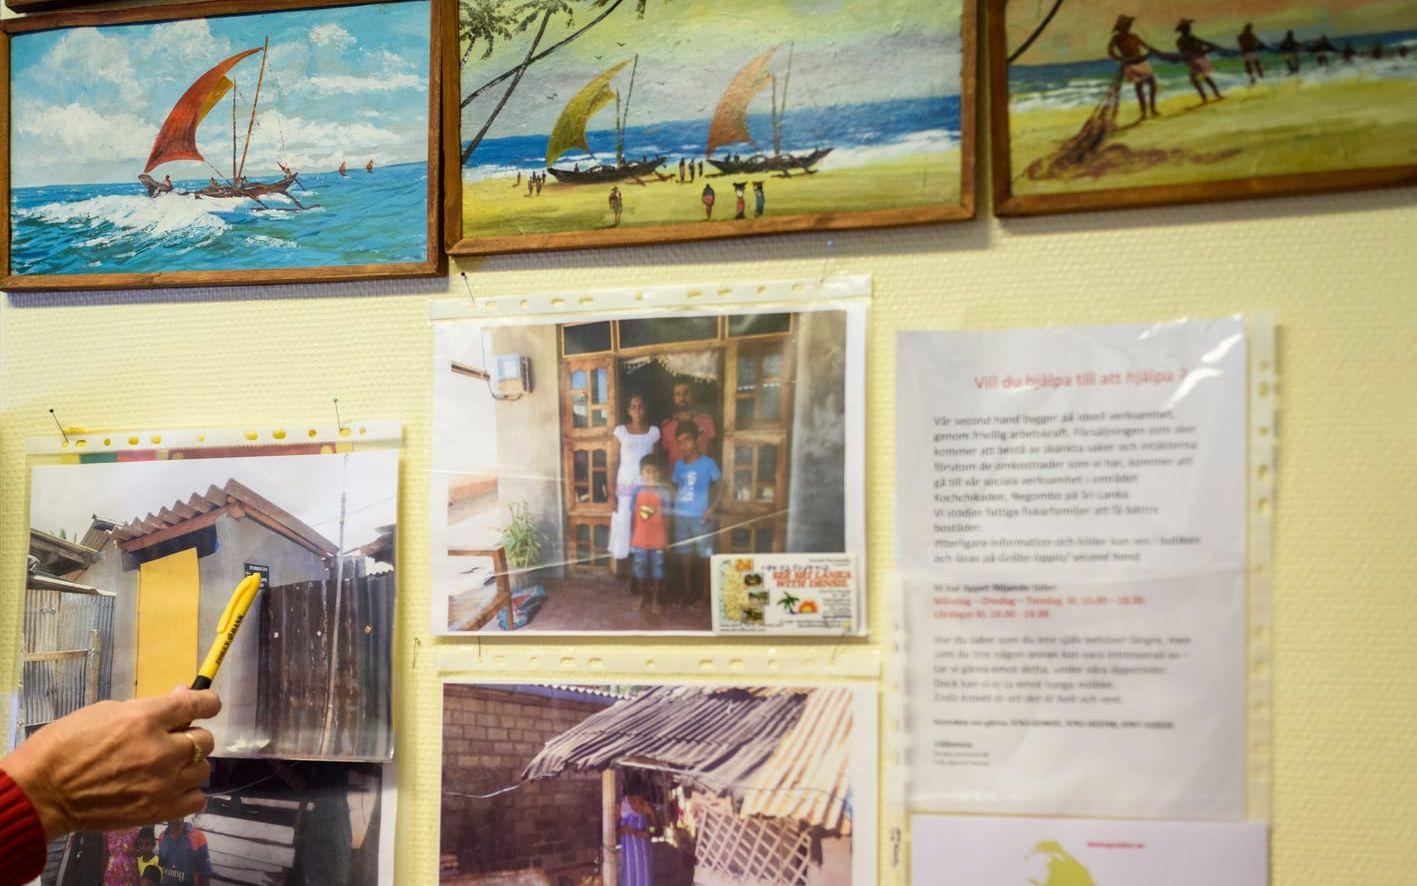 I second hand-butiken i Gråbo sitter flera foton från Sri Lanka på väggarna.